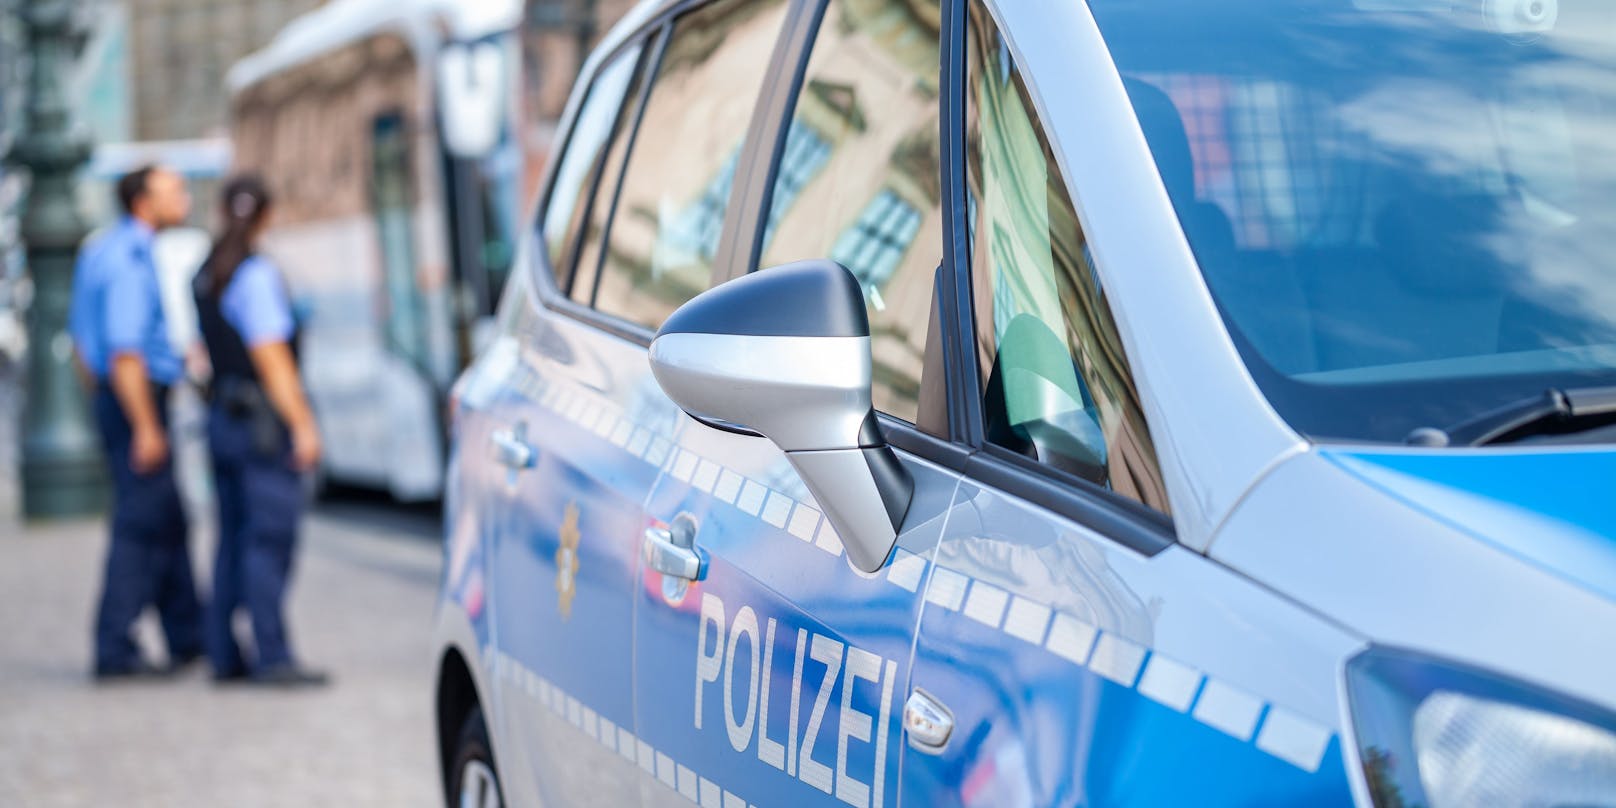 Zielfahnder der deutschen Polizei konnten den 25-Jährigen festnehmen.